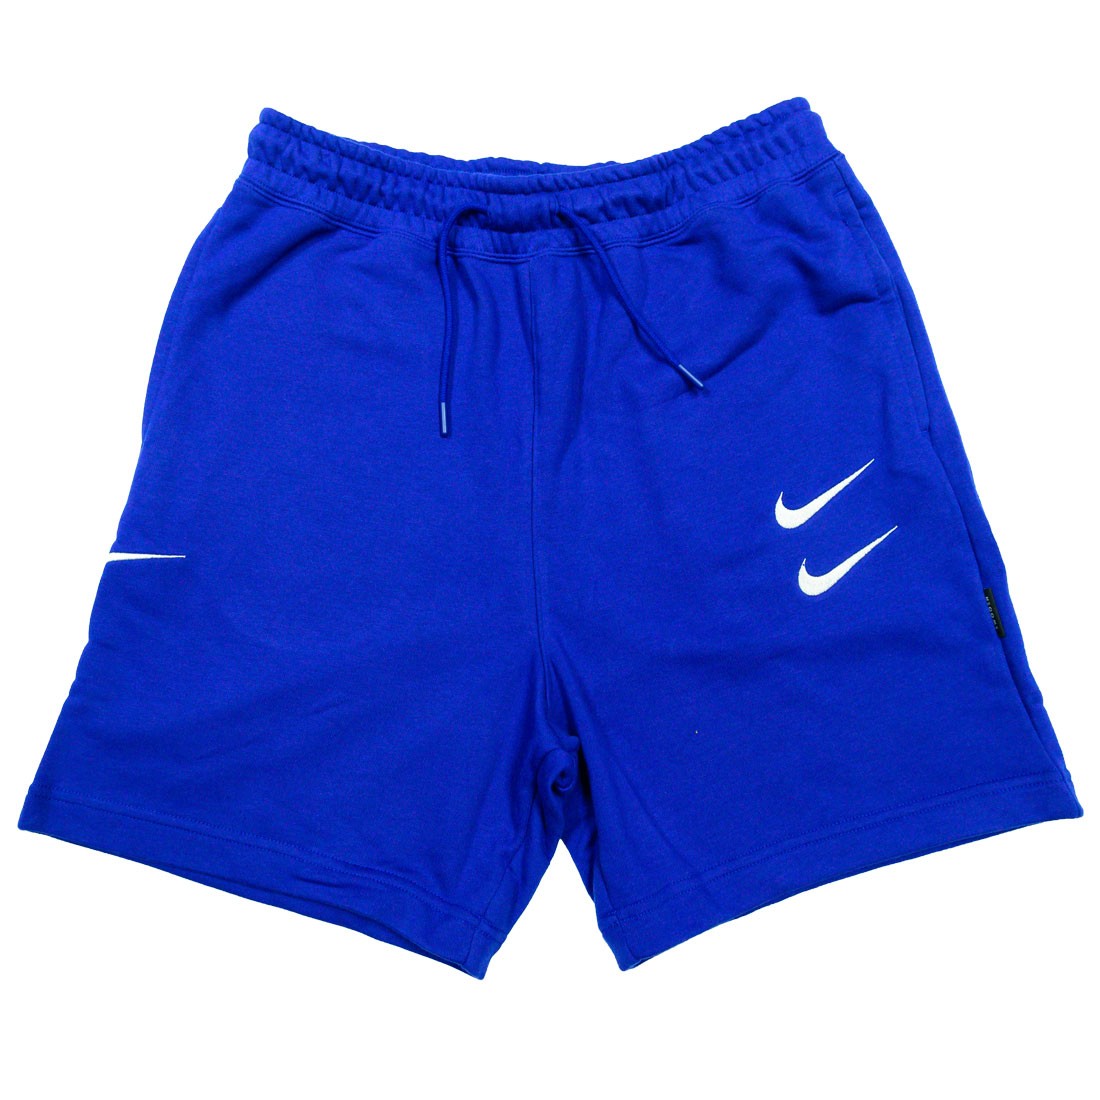 blue and white nike shorts